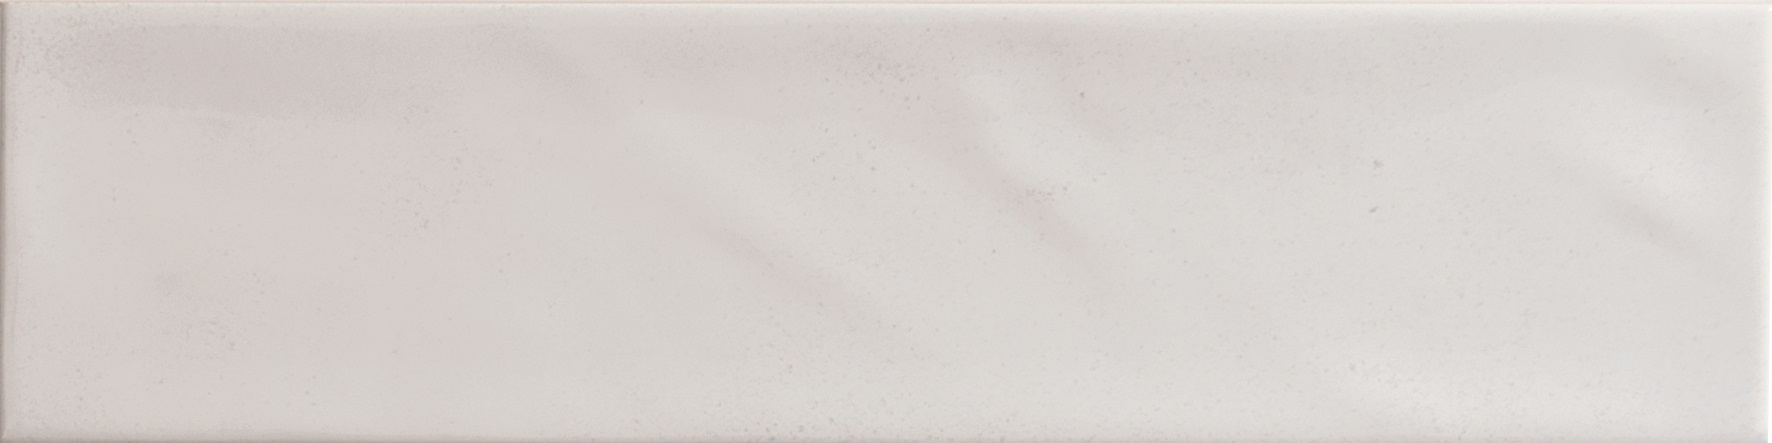 Catalea Gres Timra Metrofliesen Weiß glänzend 7,5x30 cm 